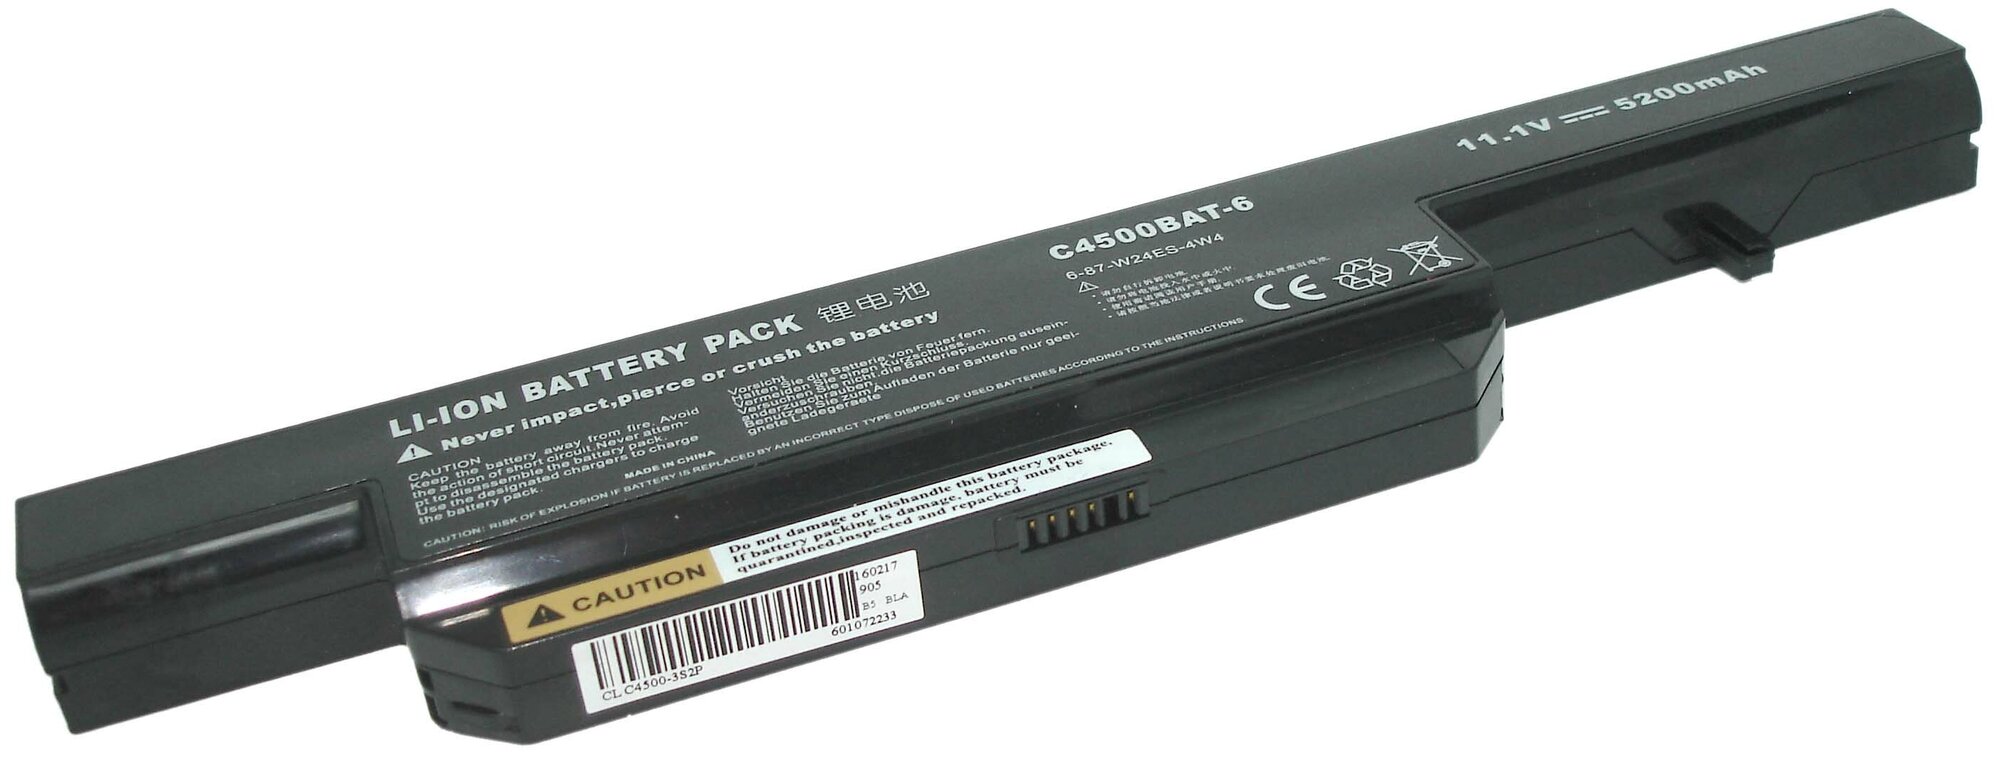 Аккумулятор OEM (совместимый с C4500BAT-6 W240BAT-6) для ноутбука DNS 0162456 10.8V 4400mAh черный